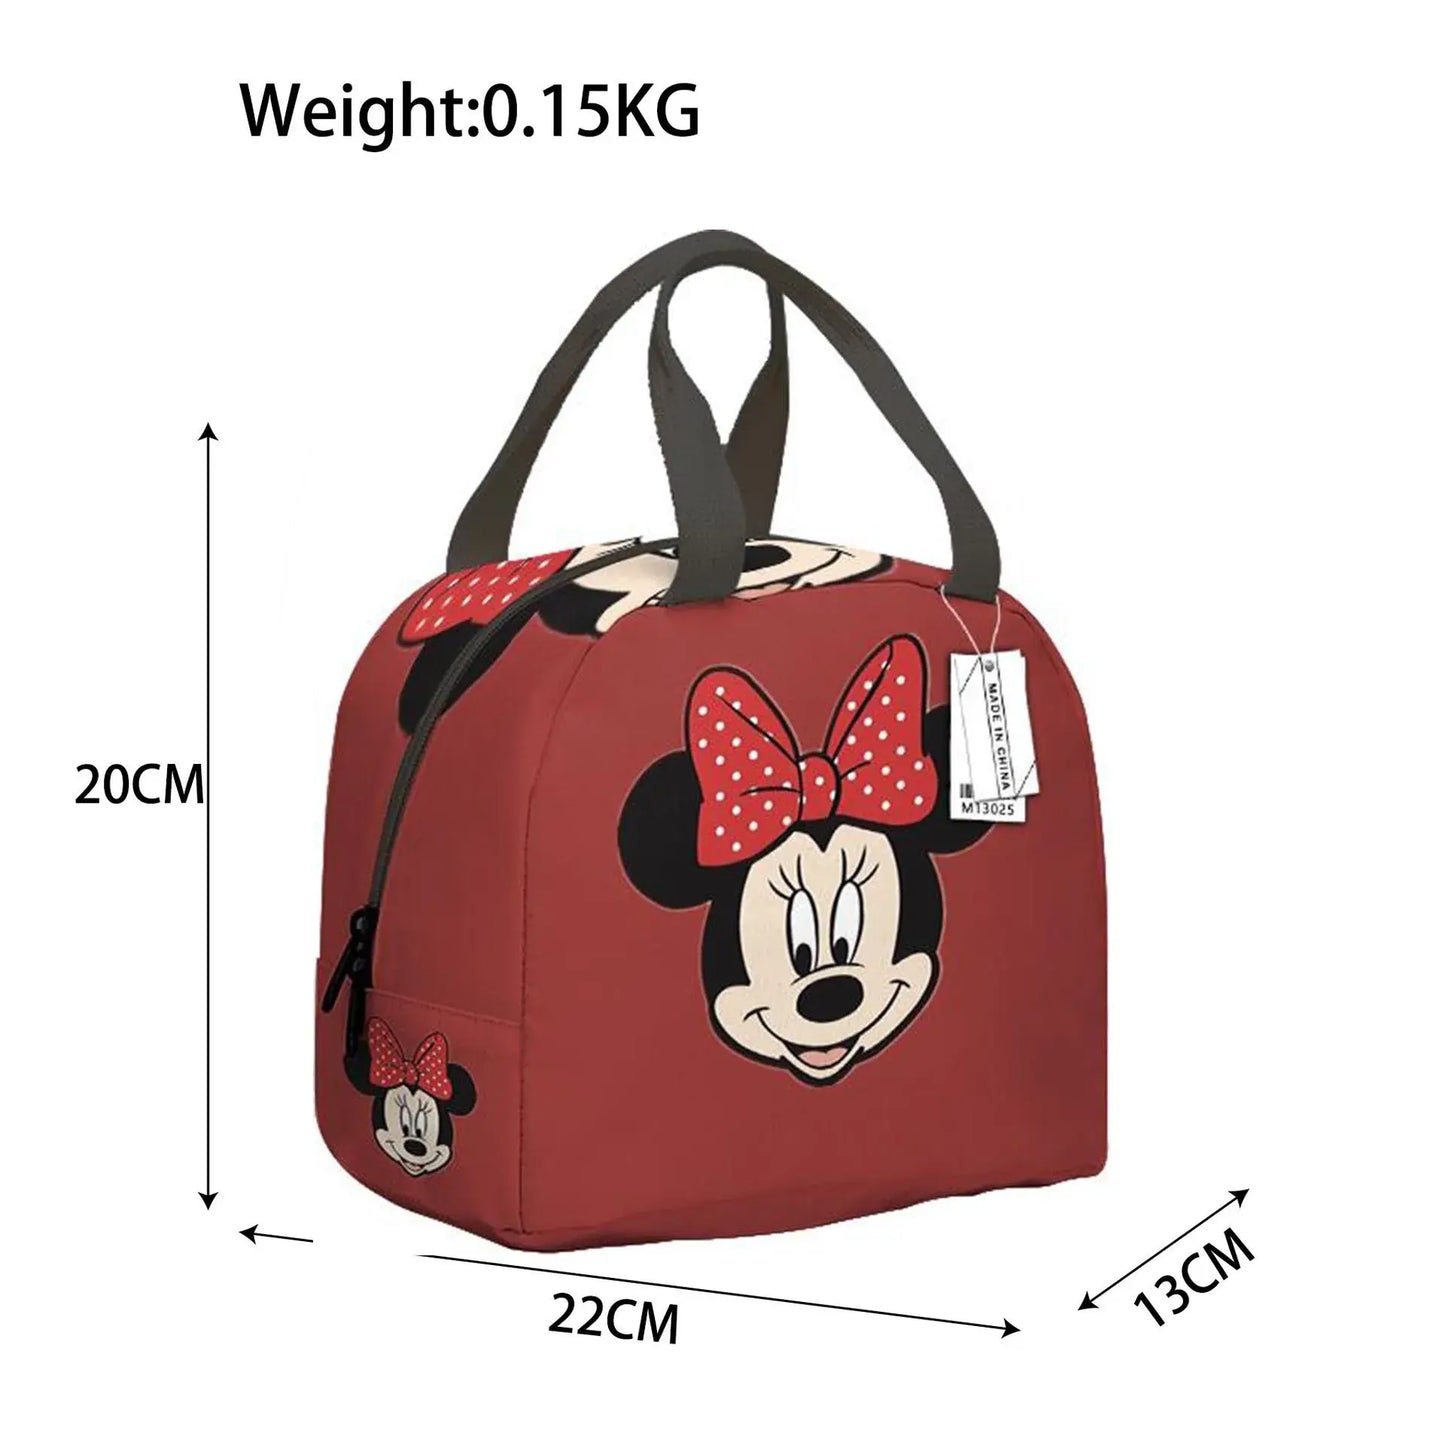 Disney-bolsa de alimentos de Mickey Mouse para niños